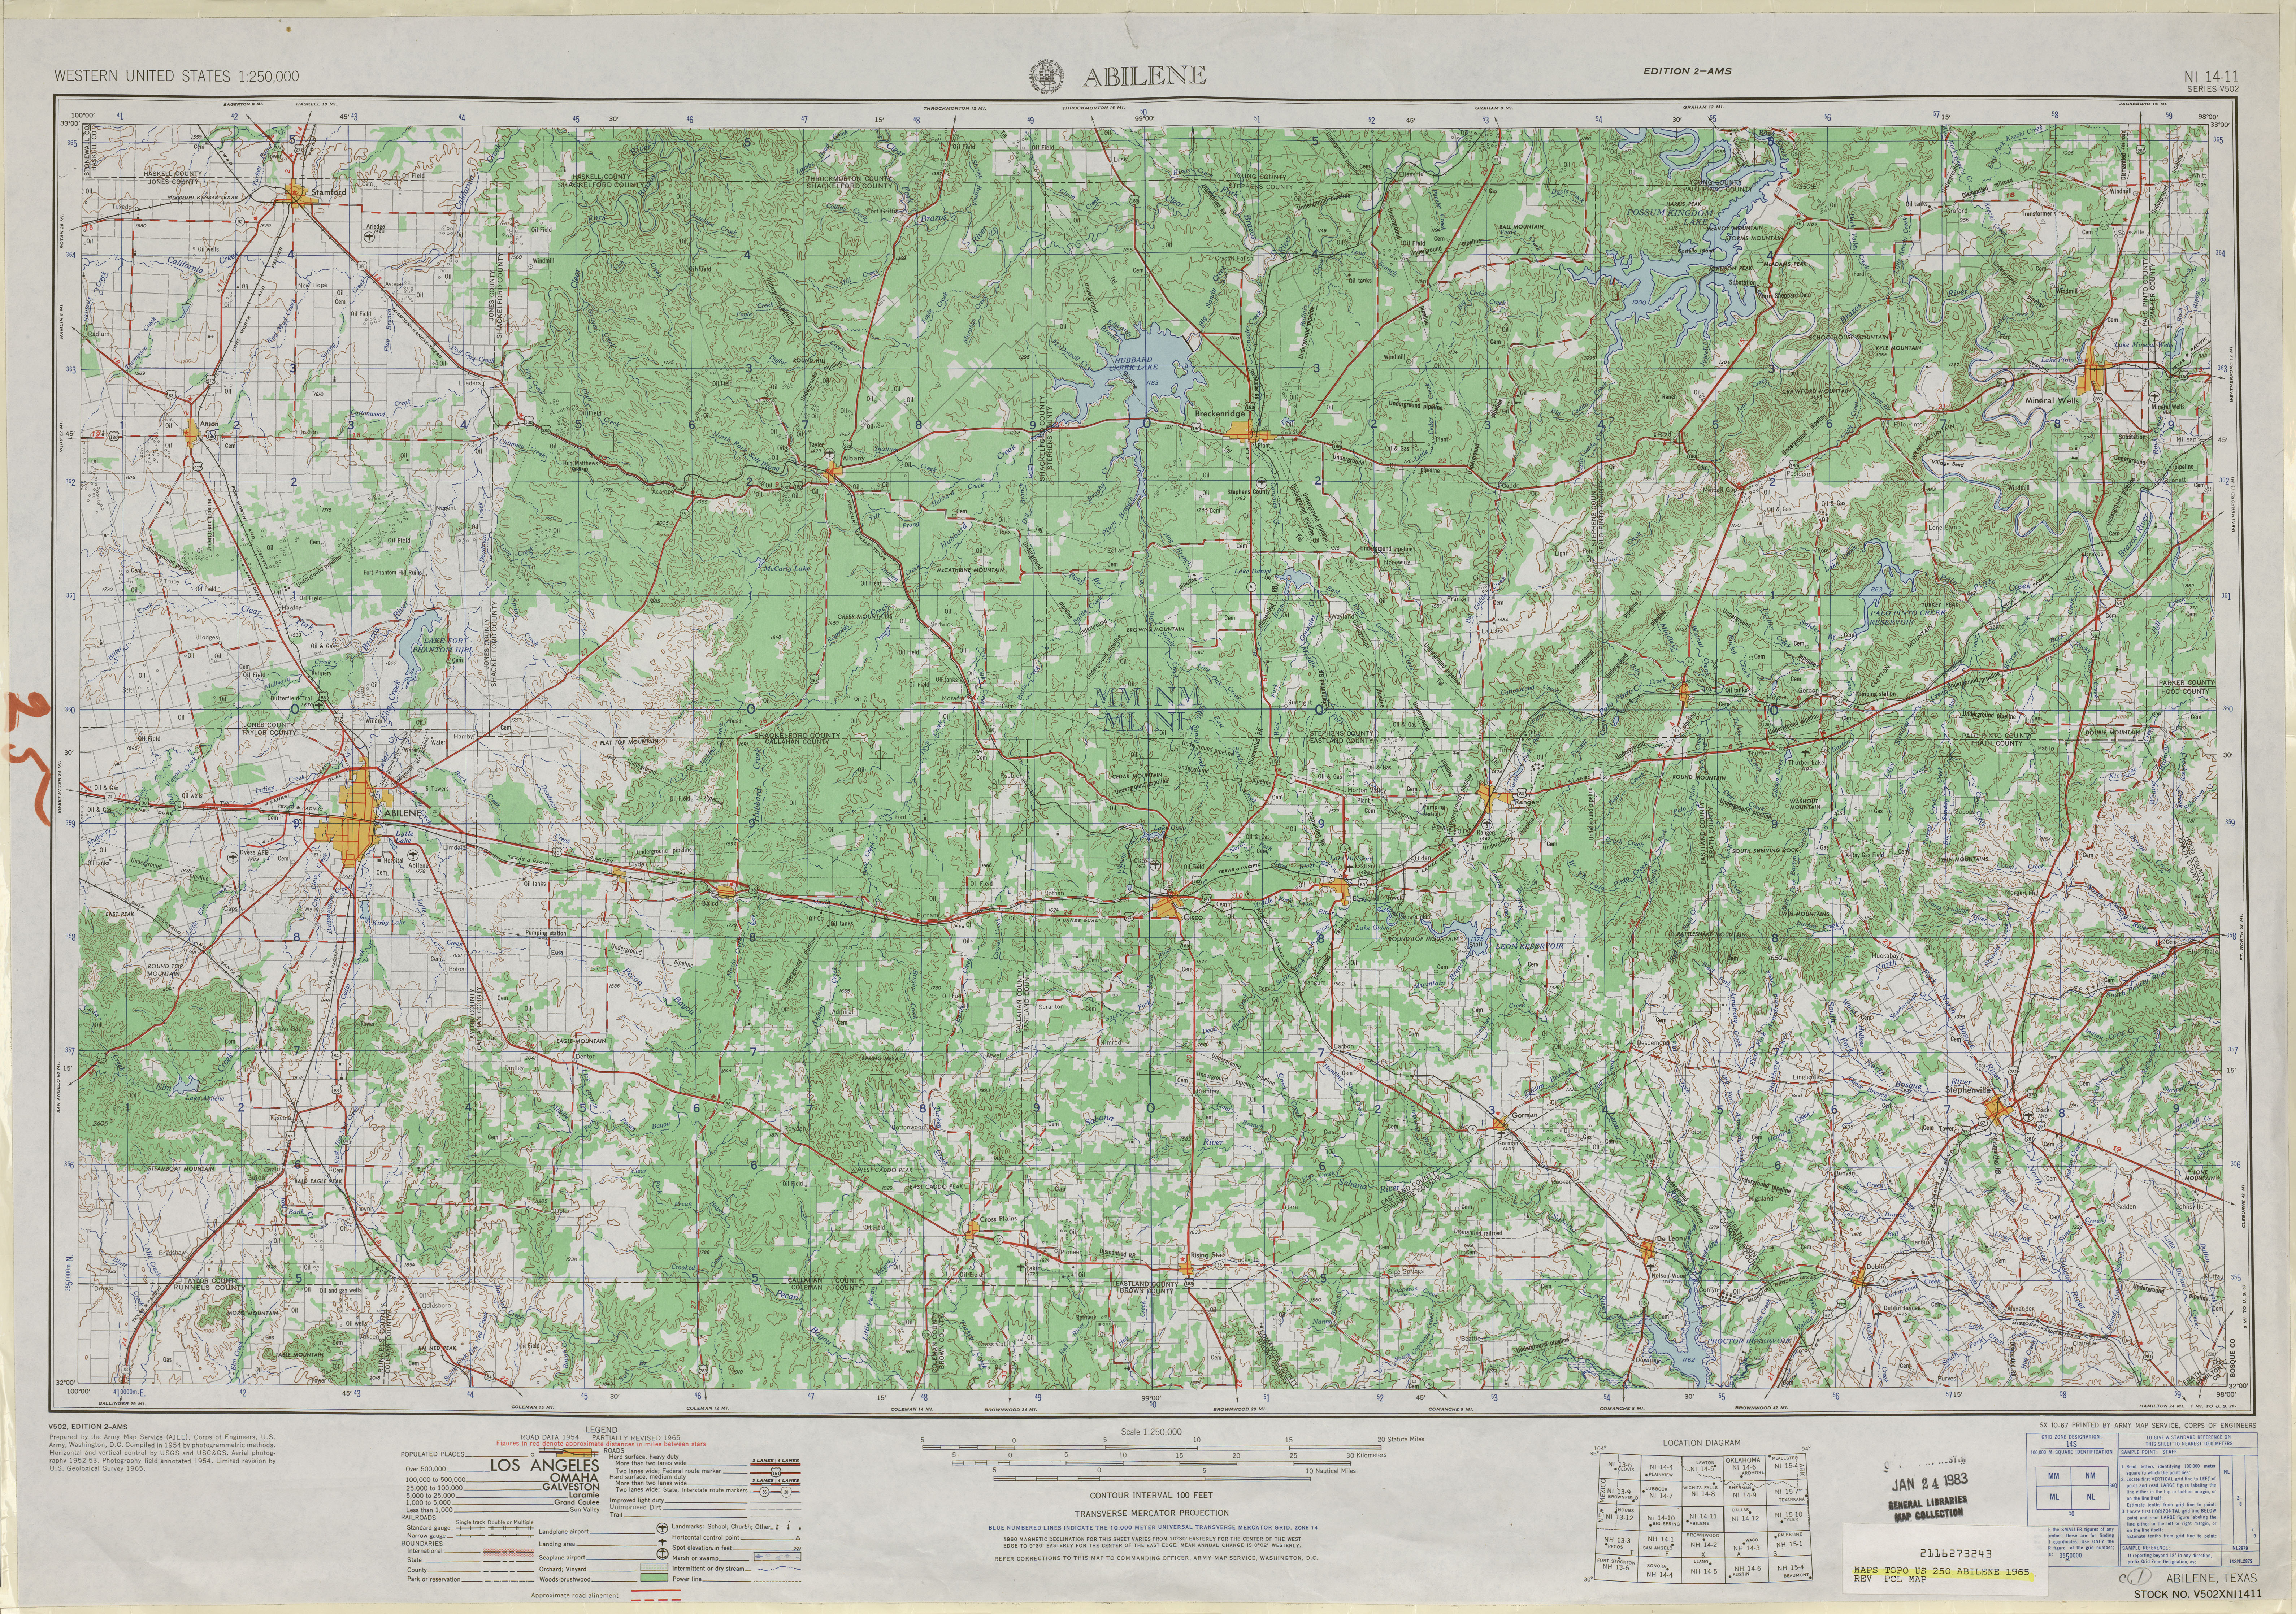 Hoja Abilene del Mapa Topográfico de los Estados Unidos 1965